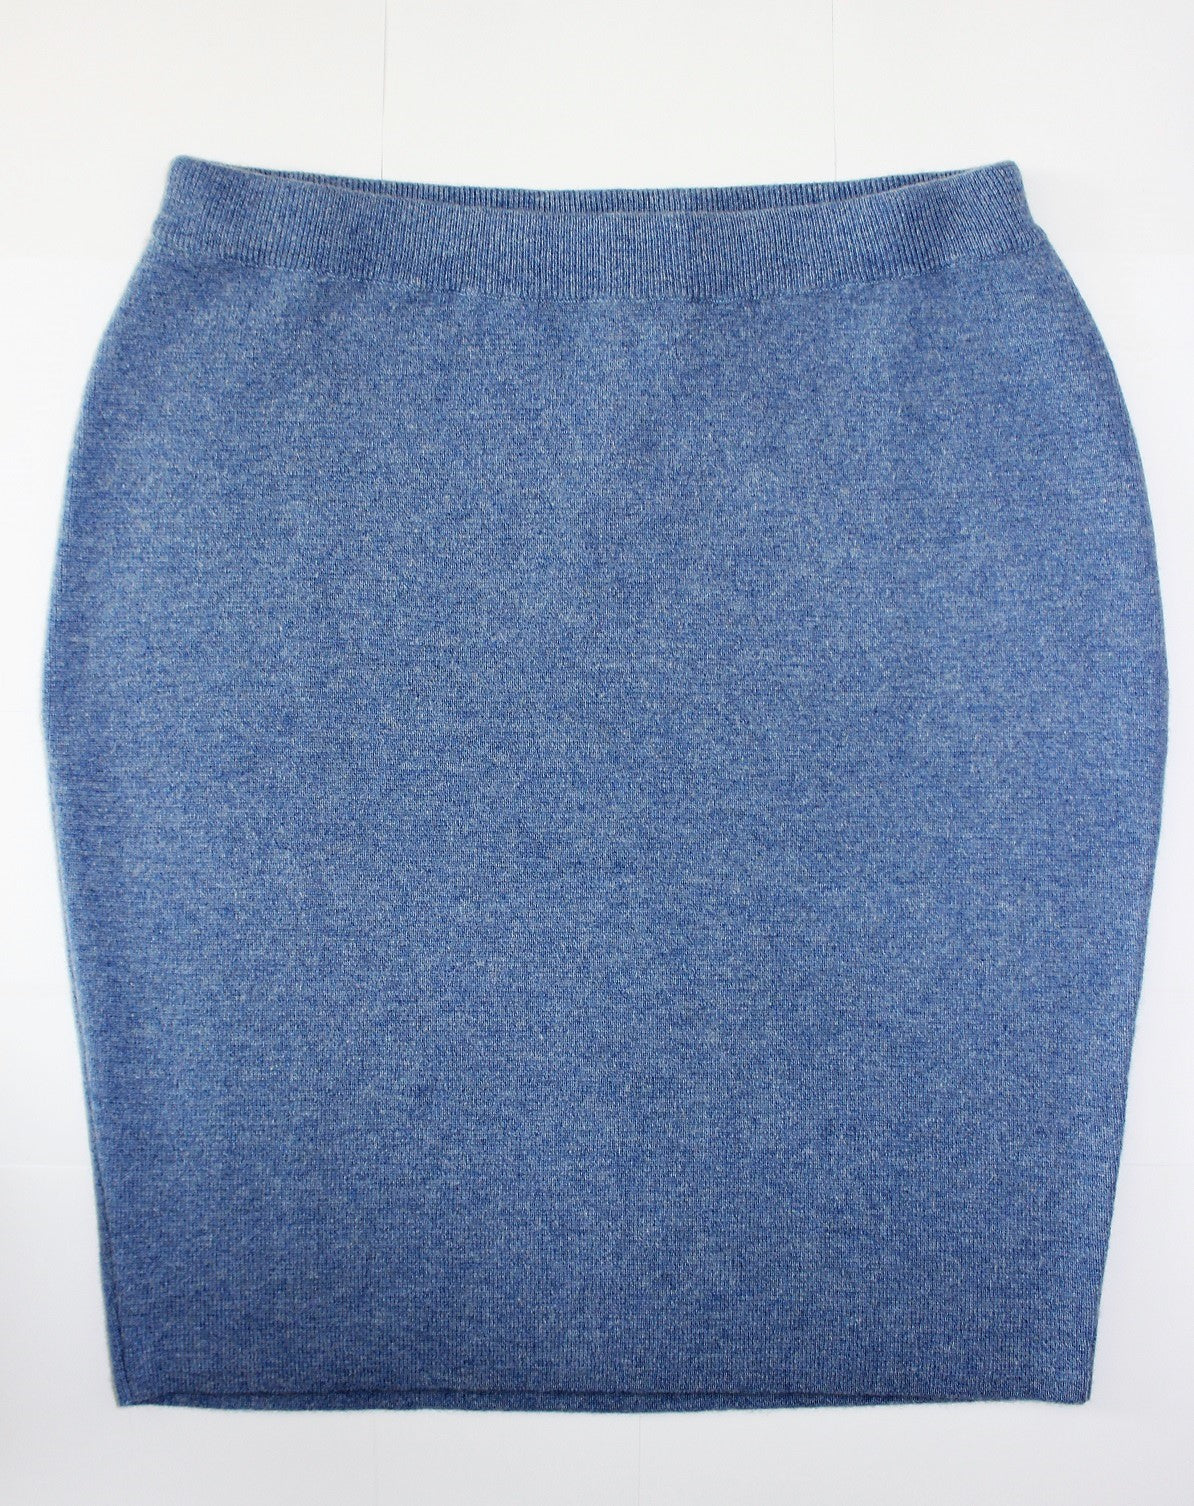 Cashmere Short Skirt